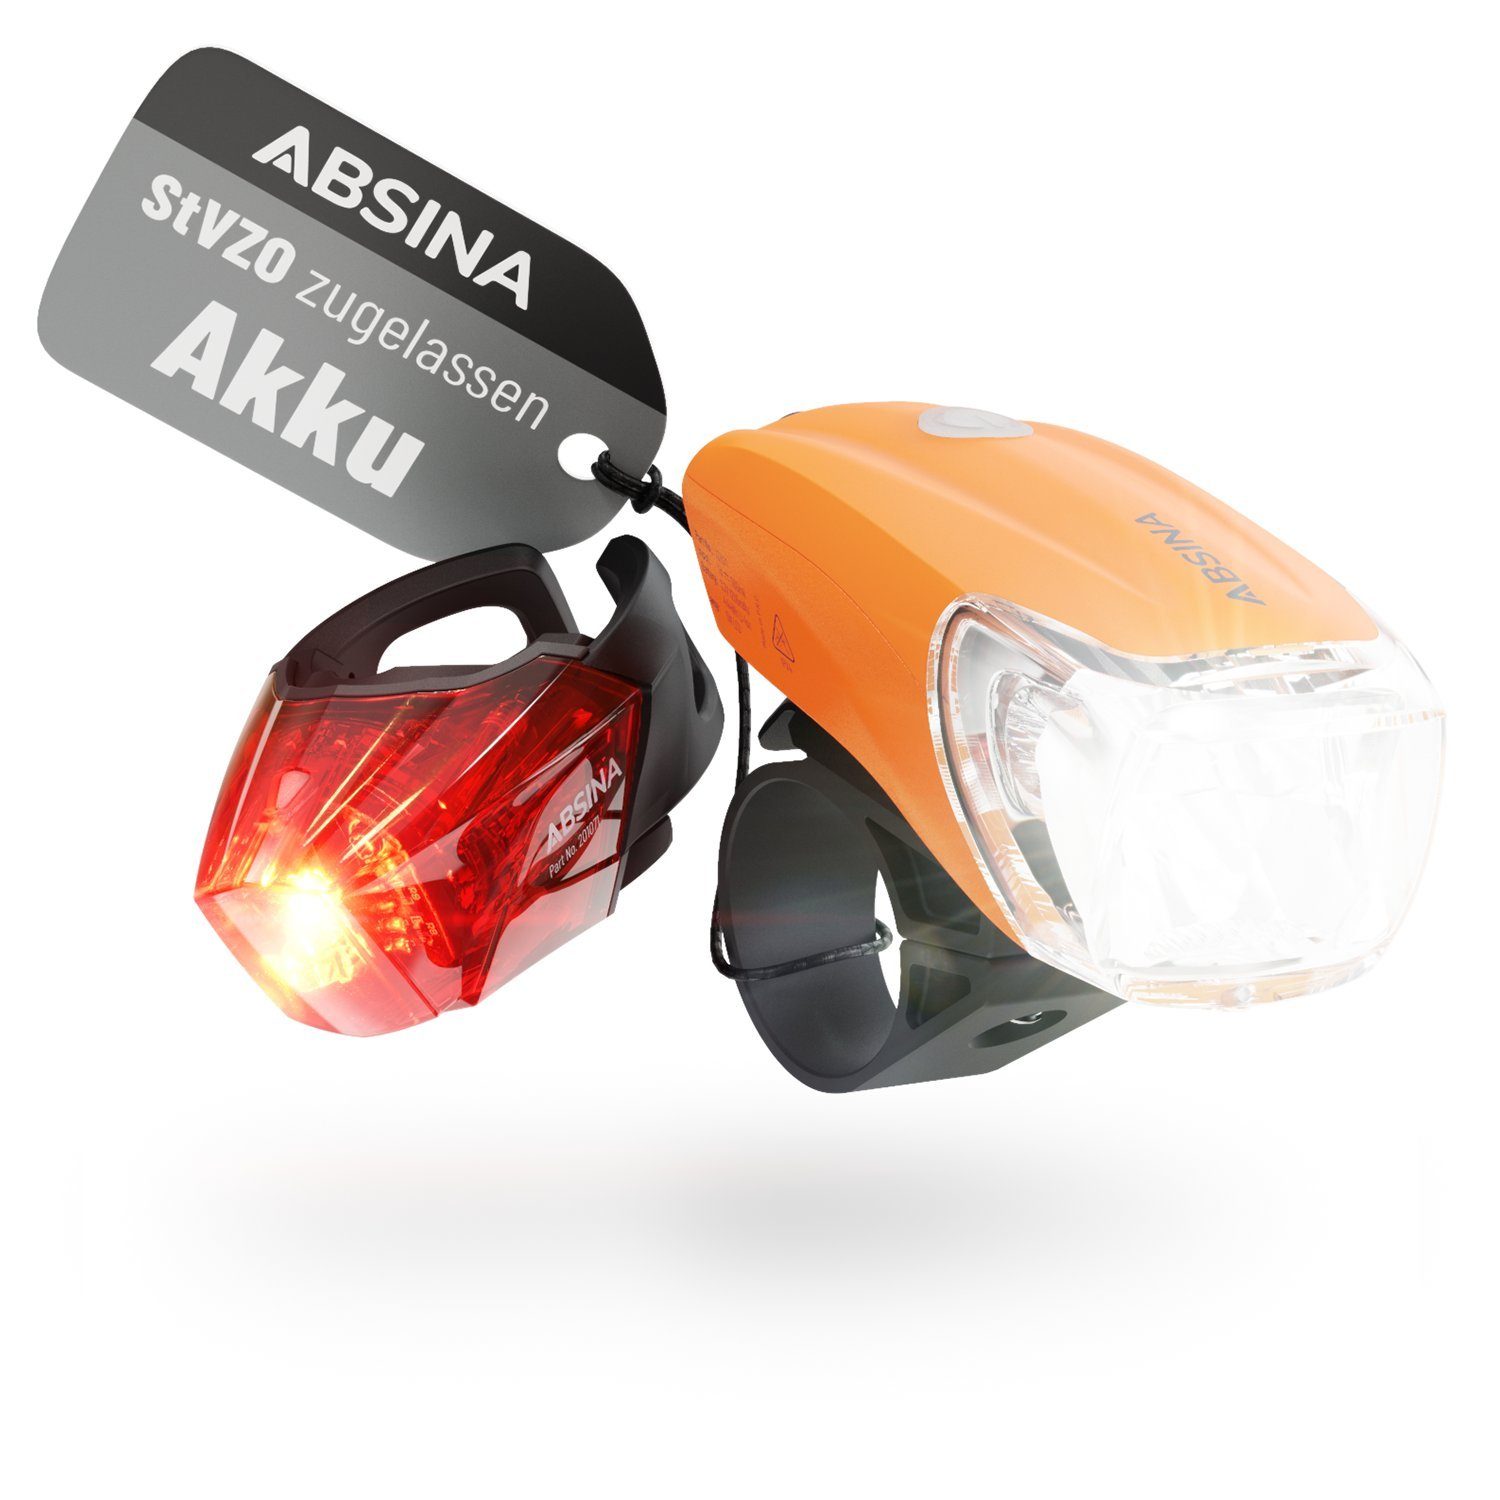 ABSINA Fahrradbeleuchtung »LED Fahrradlicht Set USB aufladbar - 100m  Reichweite, 180 Lumen & 50 Lux - Fahrradbeleuchtung Set StVZO zugelassen -  Kinderfahrrad Lichter LED Set, Fahrradlicht Kinder, Fahrradlampe Lichtset«  online kaufen | OTTO